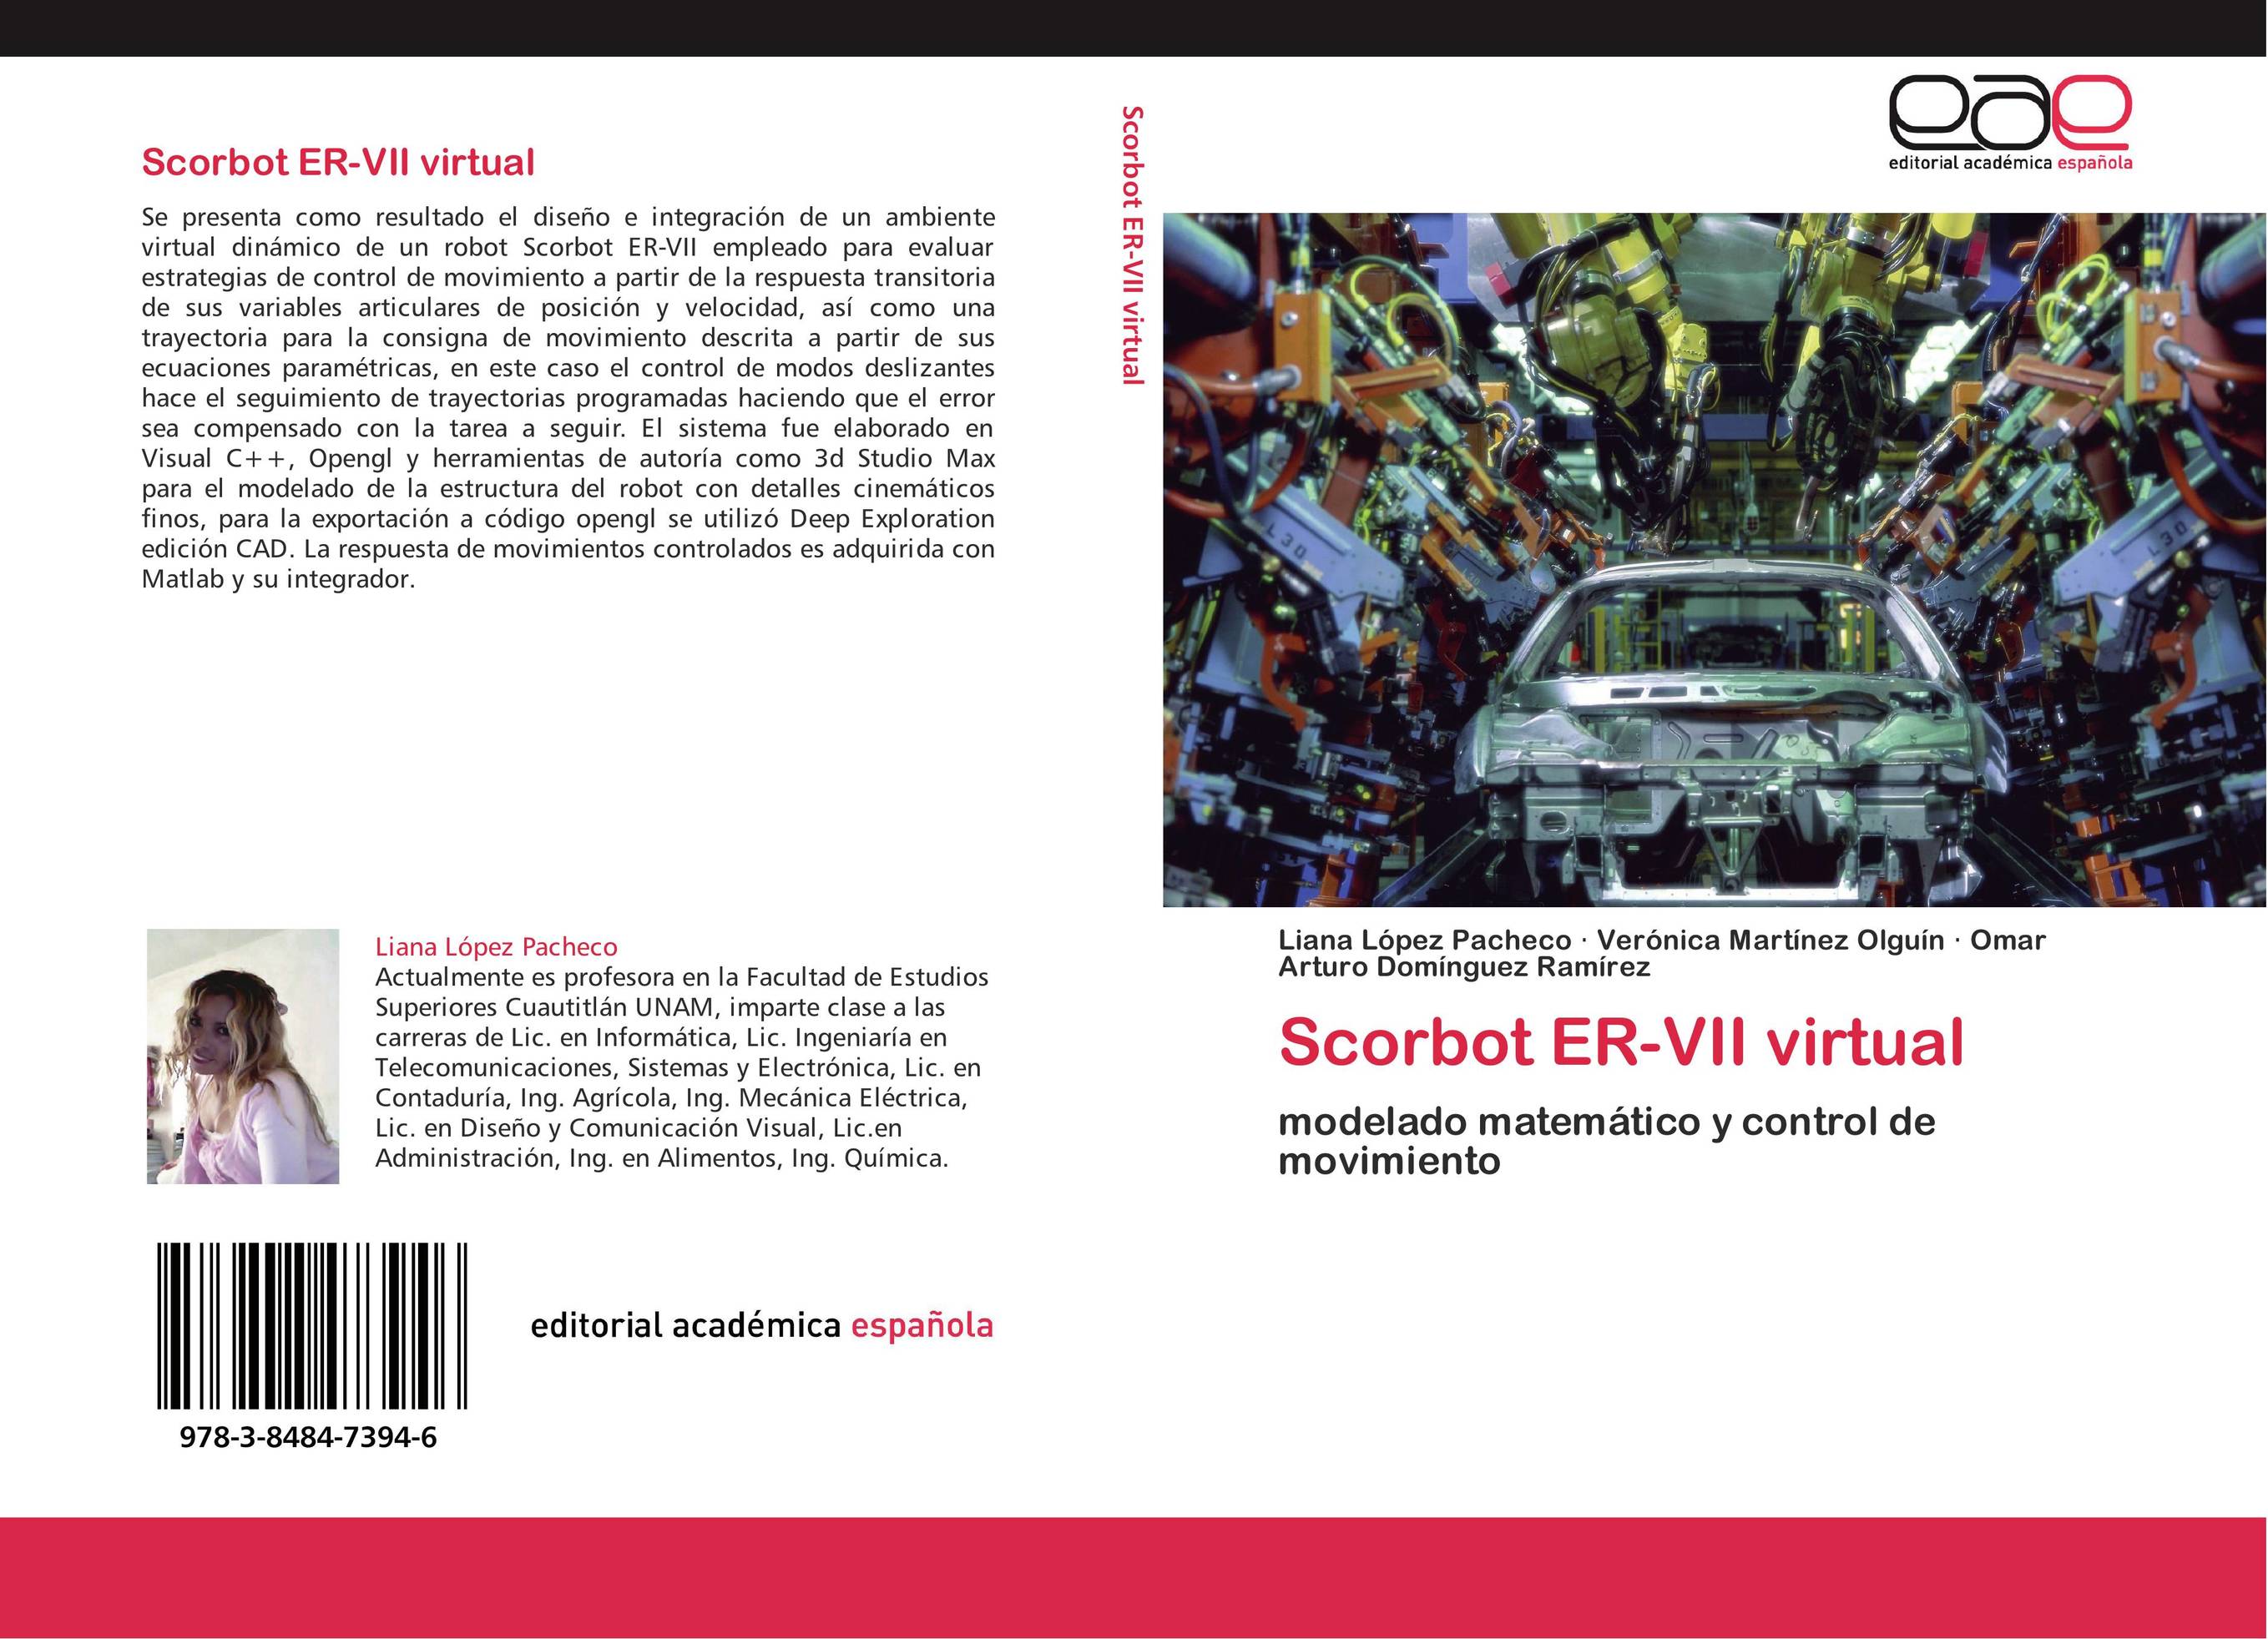 Scorbot ER-VII virtual